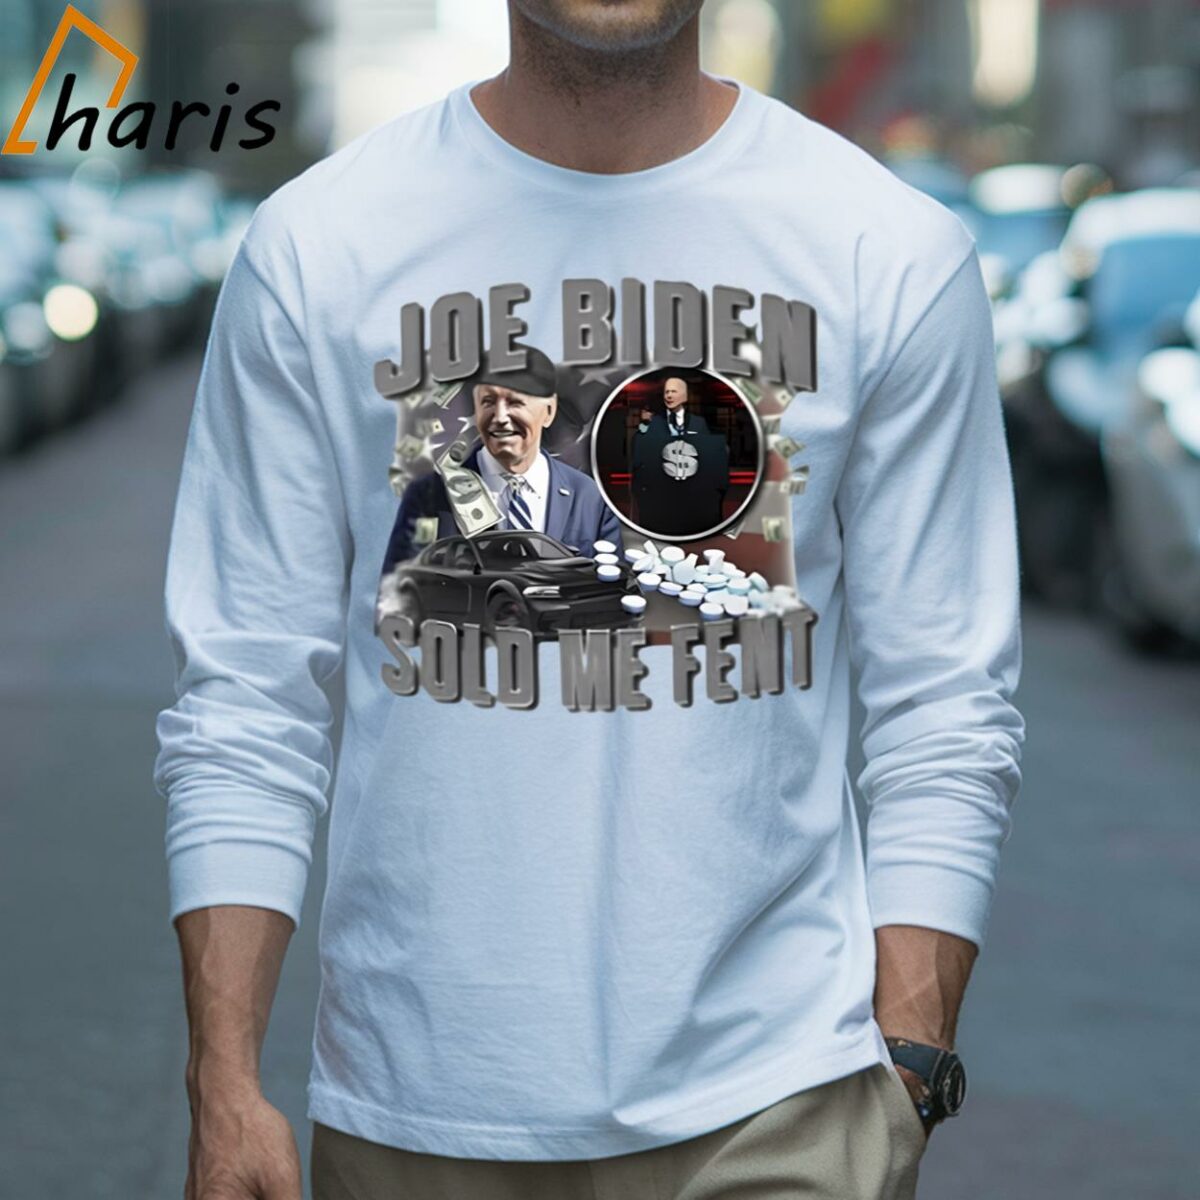 Joe Biden Sold Me Fent Shirt 3 Long sleeve shirt